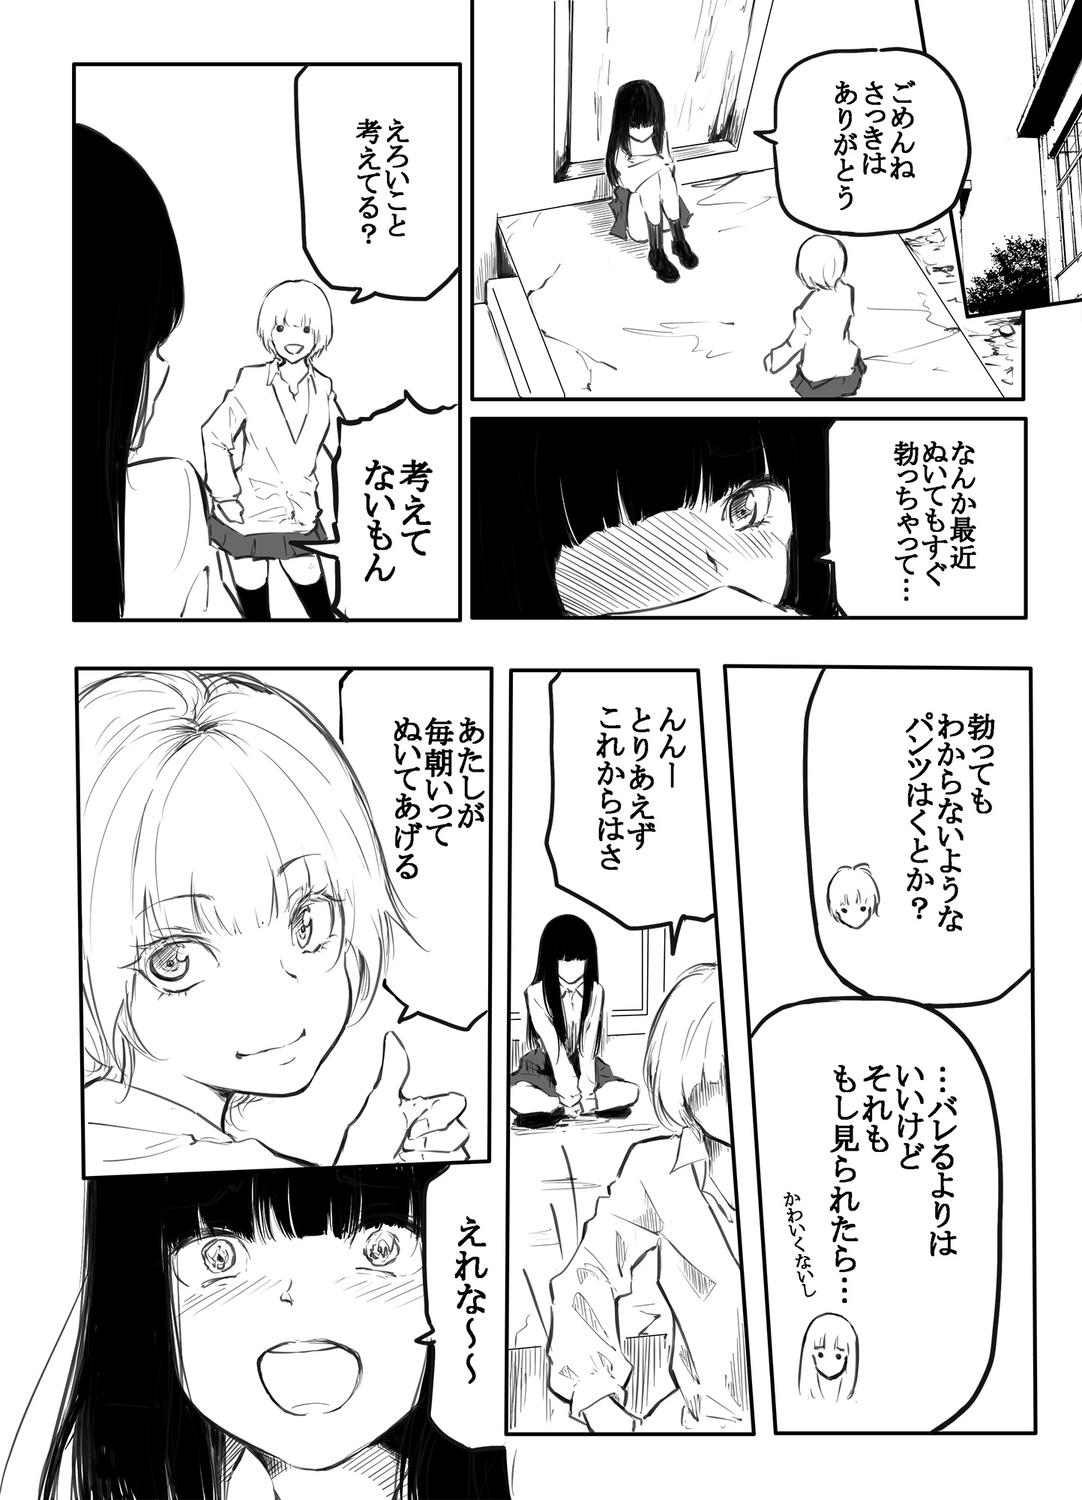 Chaturbate Kō miete haetemasu. Spreadeagle - Page 10